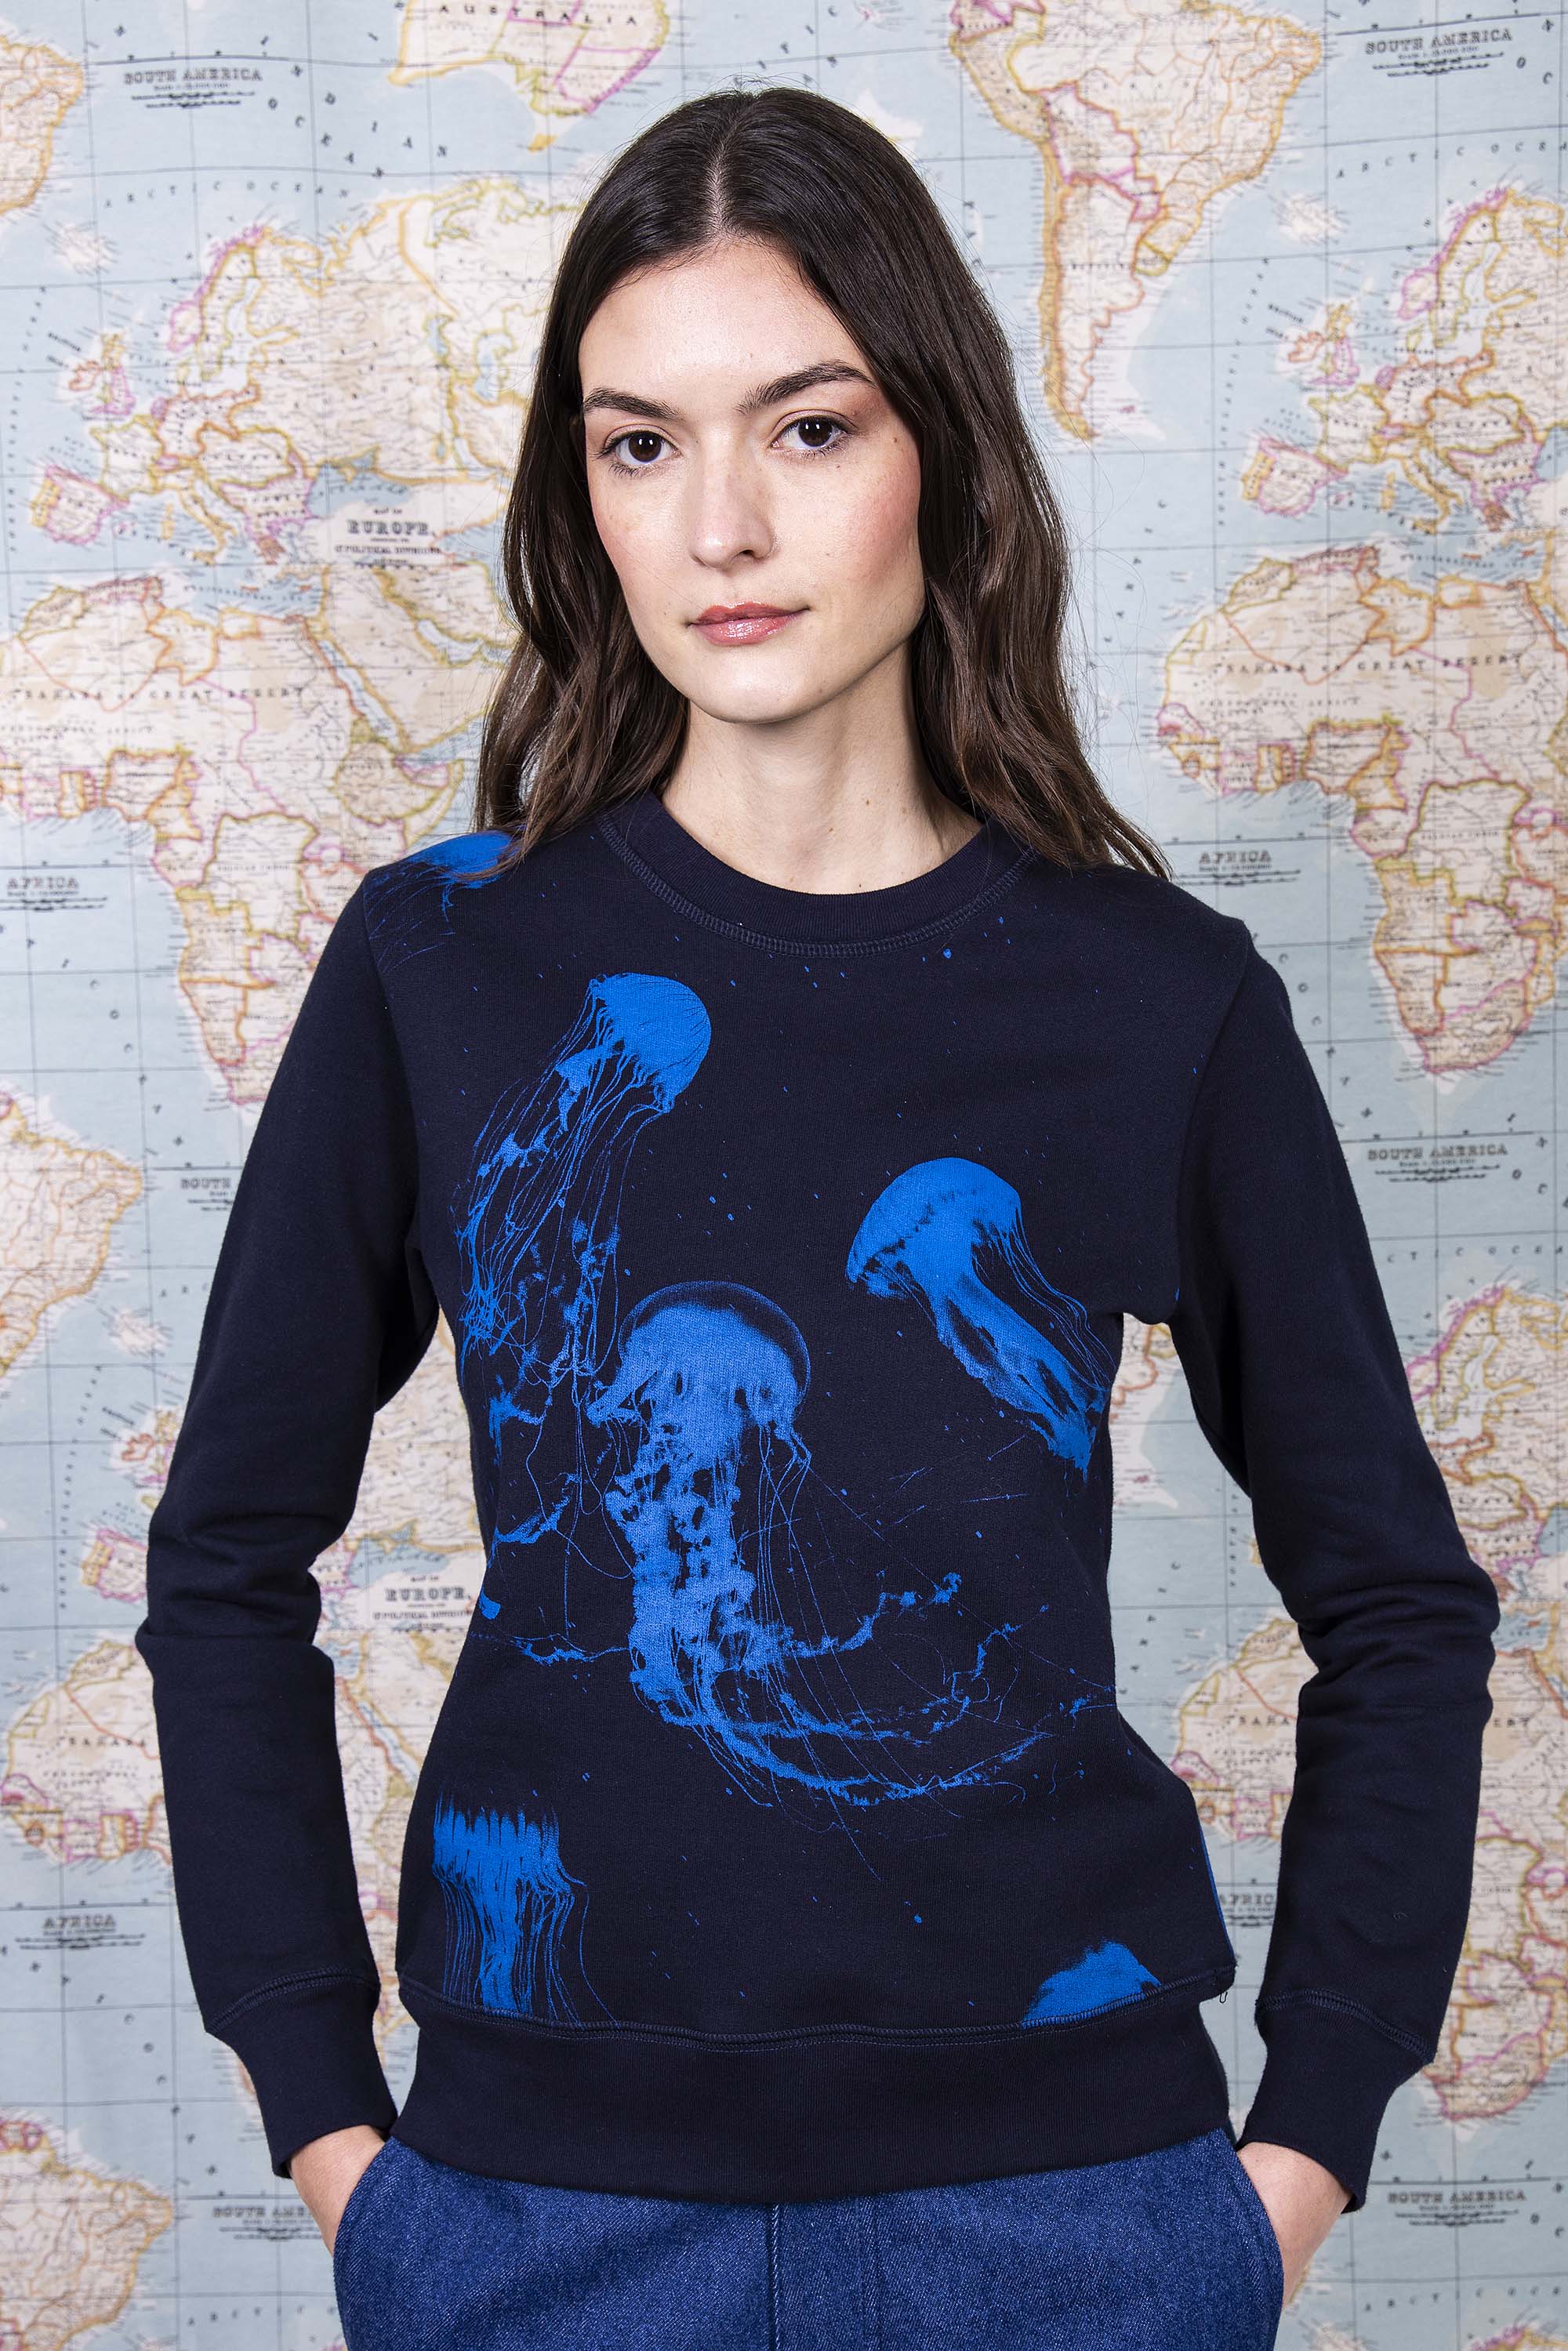 Sweatshirt Macarron Medusas Bleu Marine sweatshirt femme, pièce basique et vêtement cocooning du quotidien